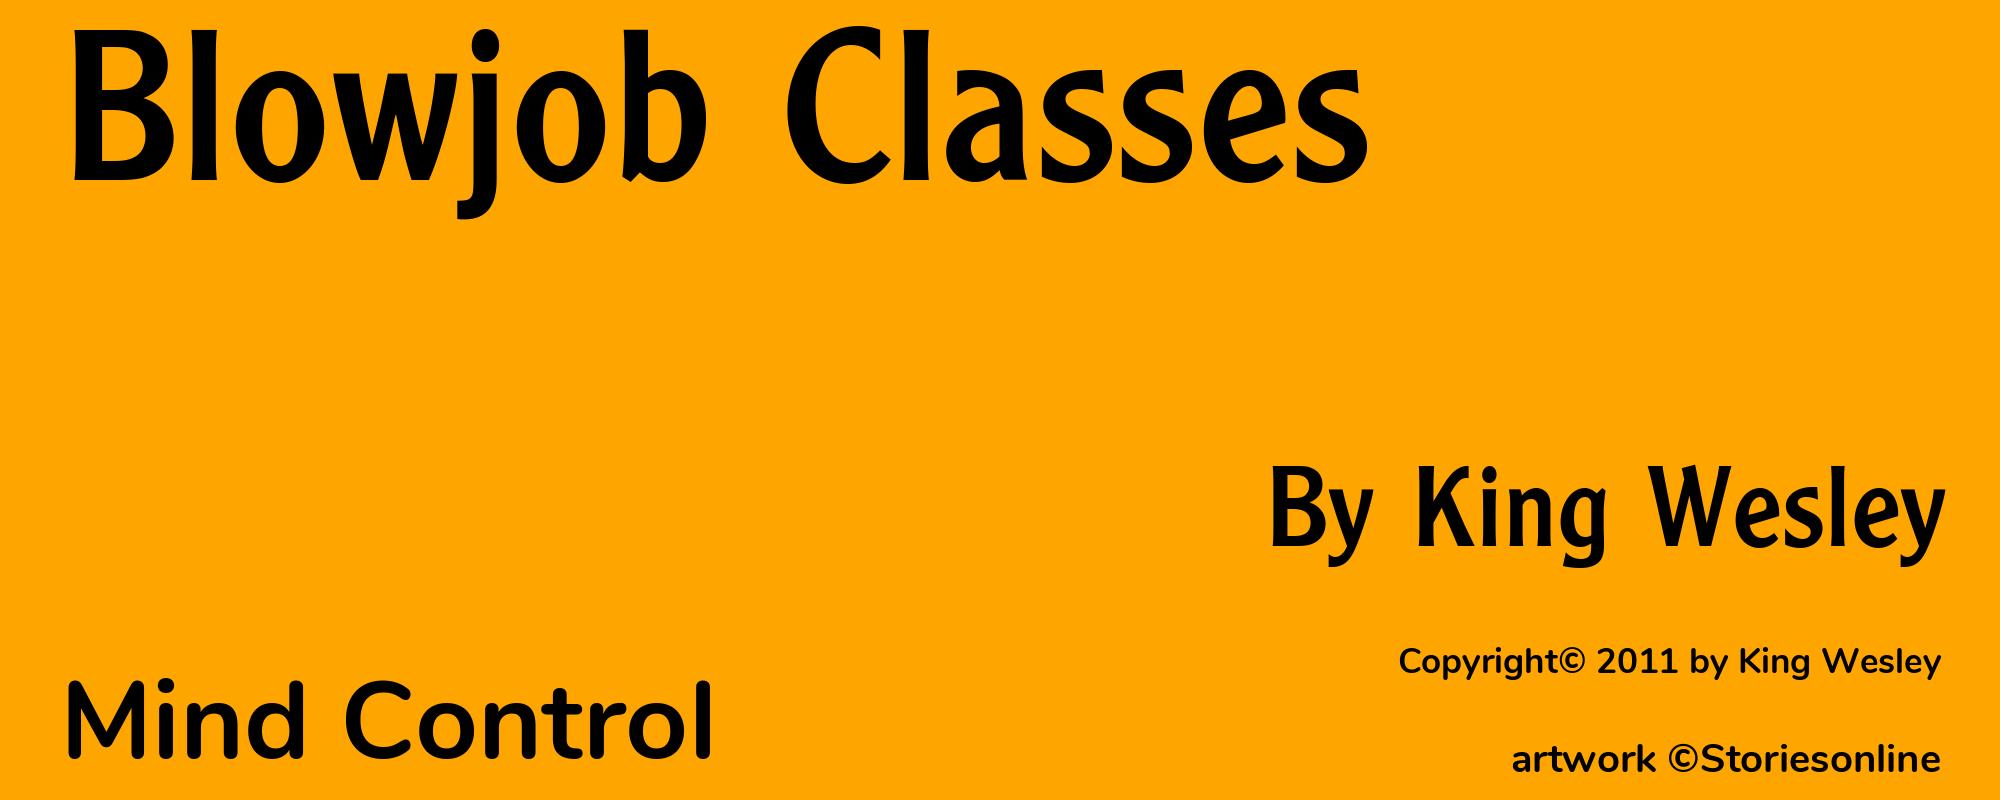 Blowjob Classes - Cover